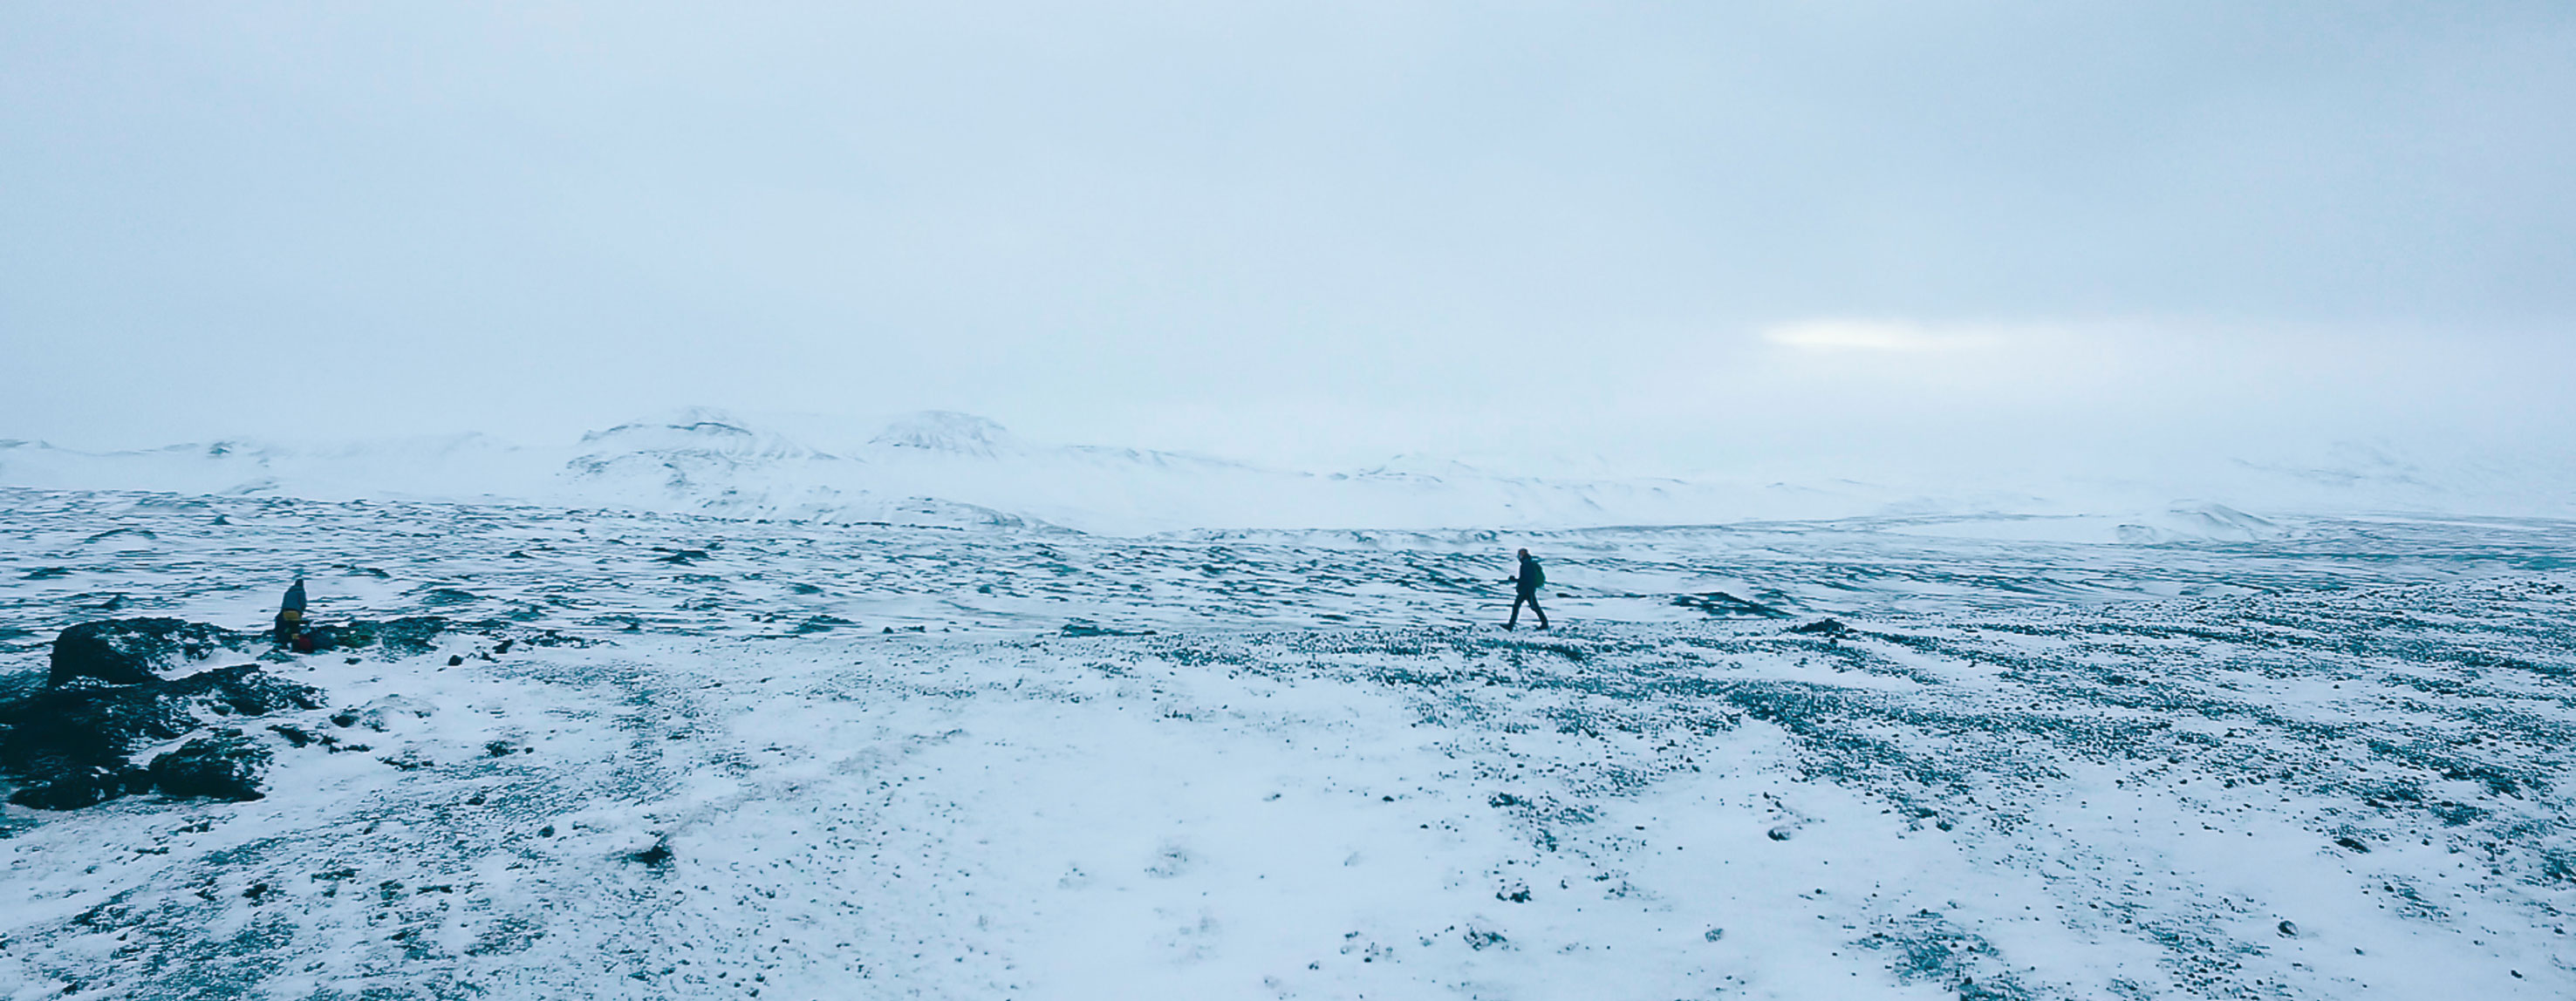 Bild från det isländska landskapet